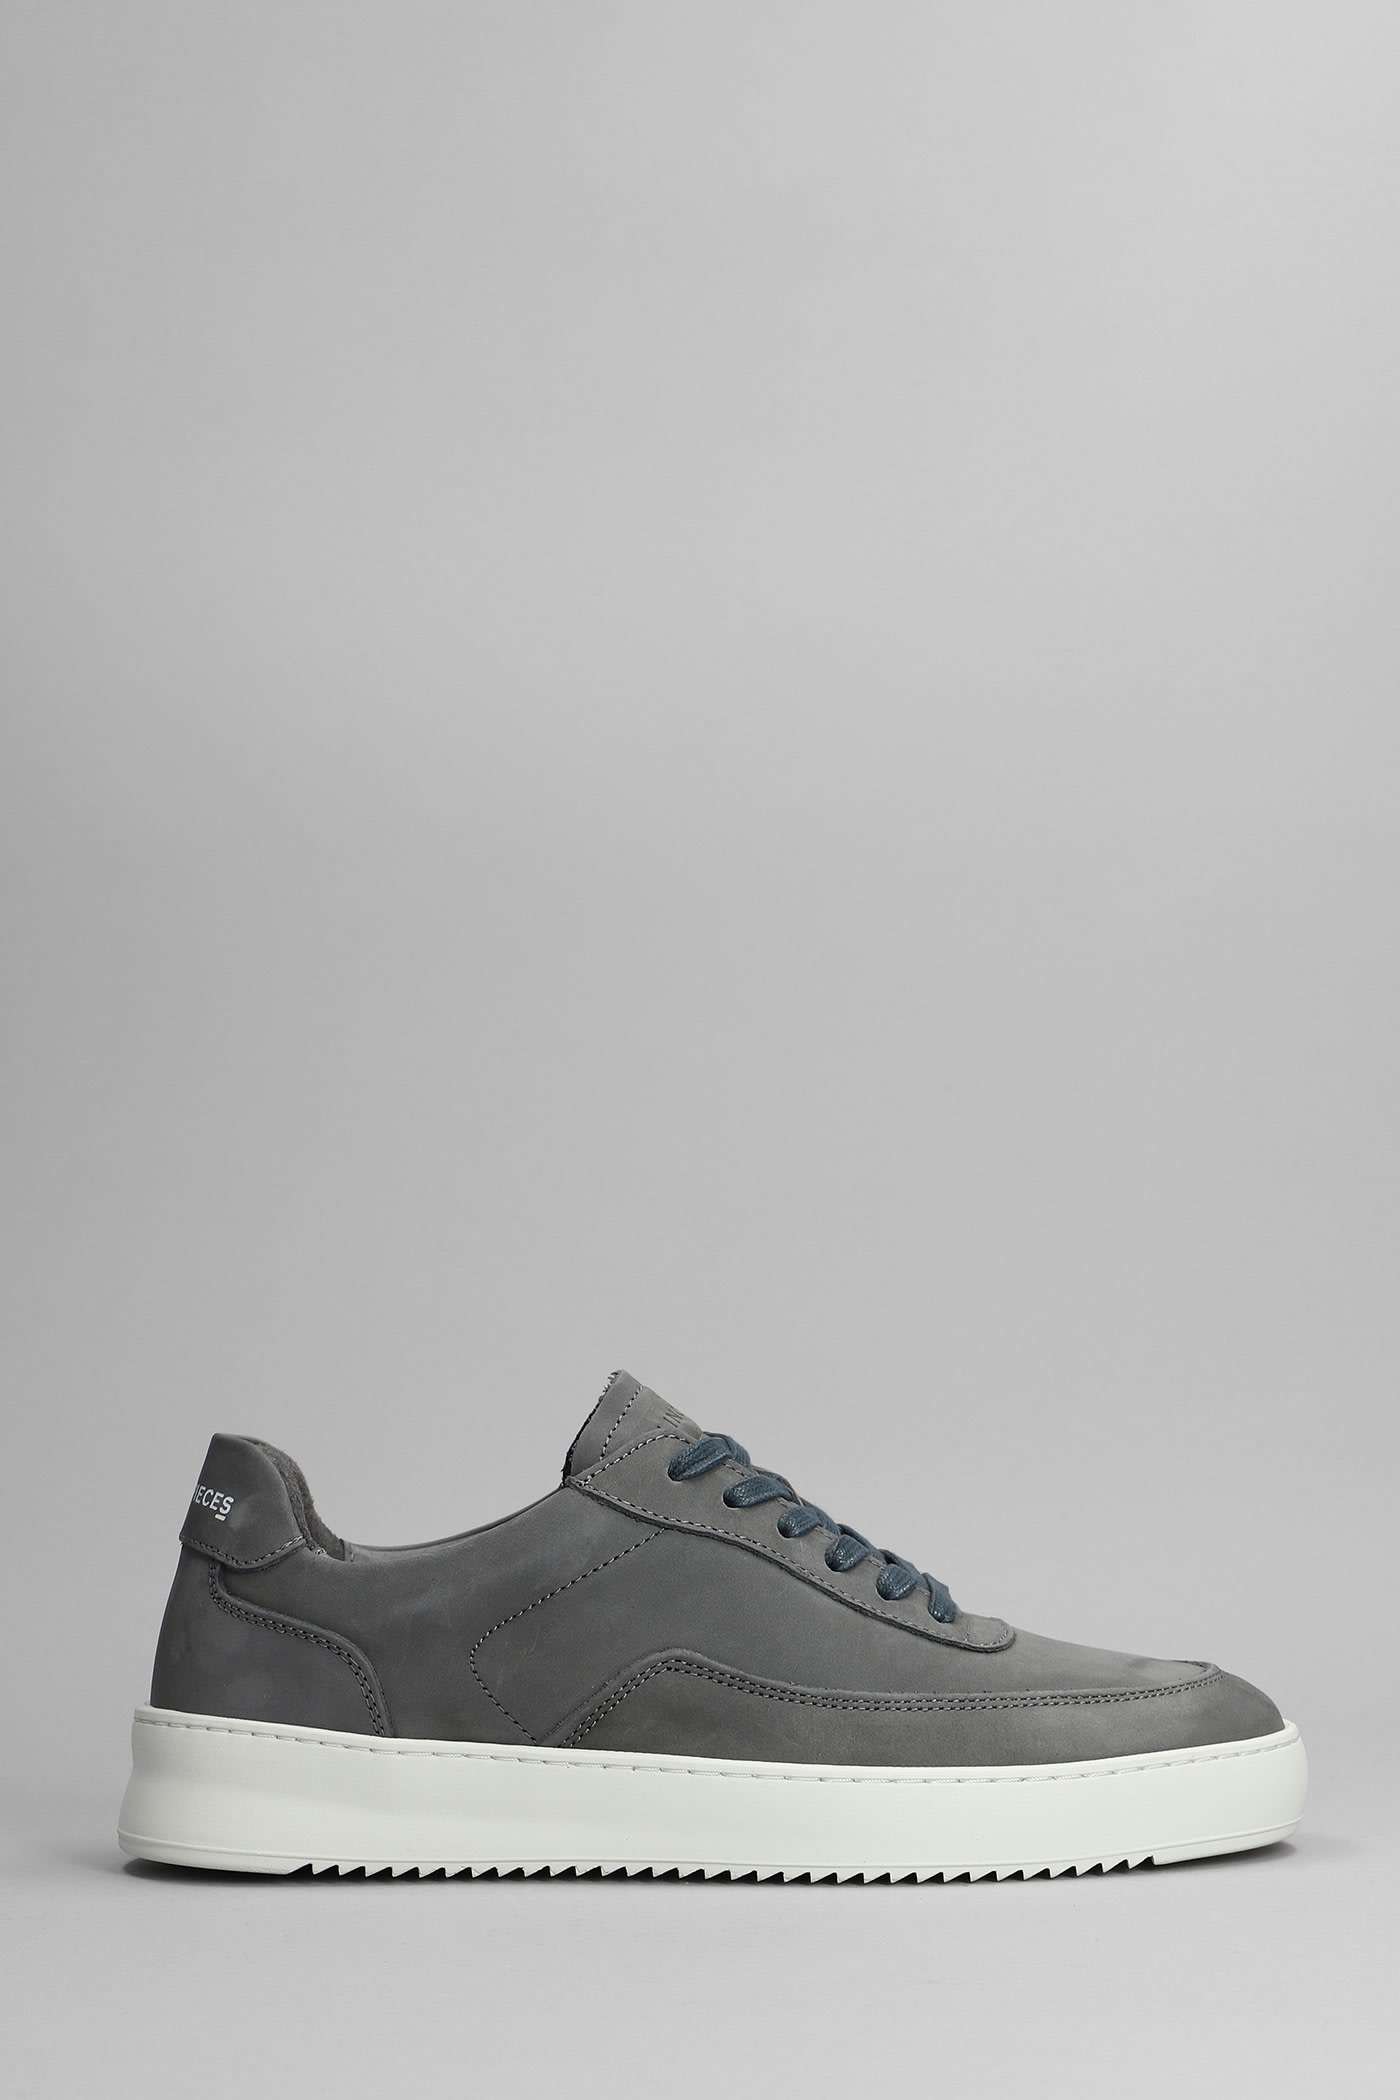 Filling Pieces Mondo 2.0 Ripple Sneakers In Grey Nubuck